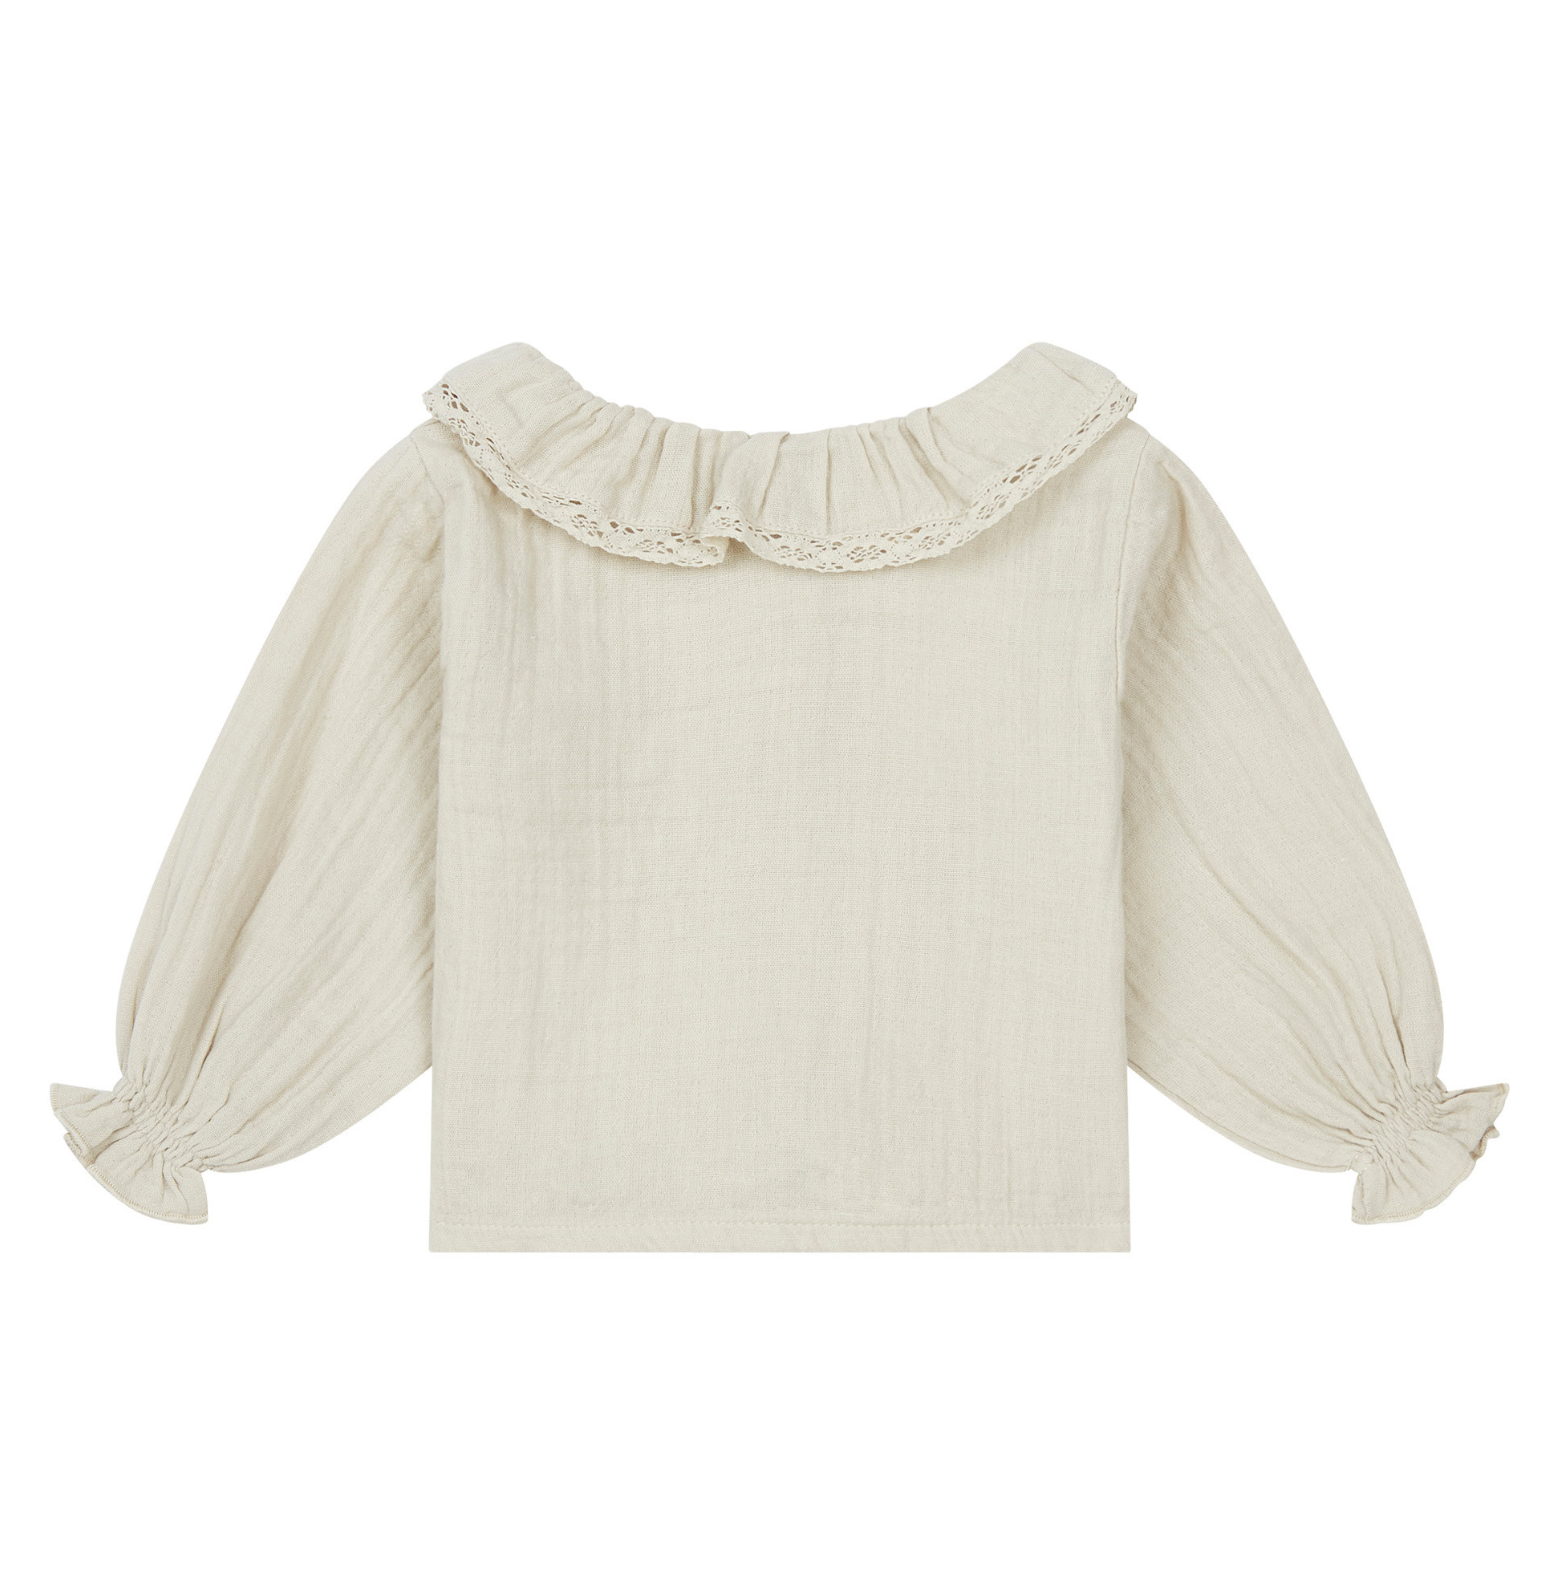 blouse bianca argile marlot paris